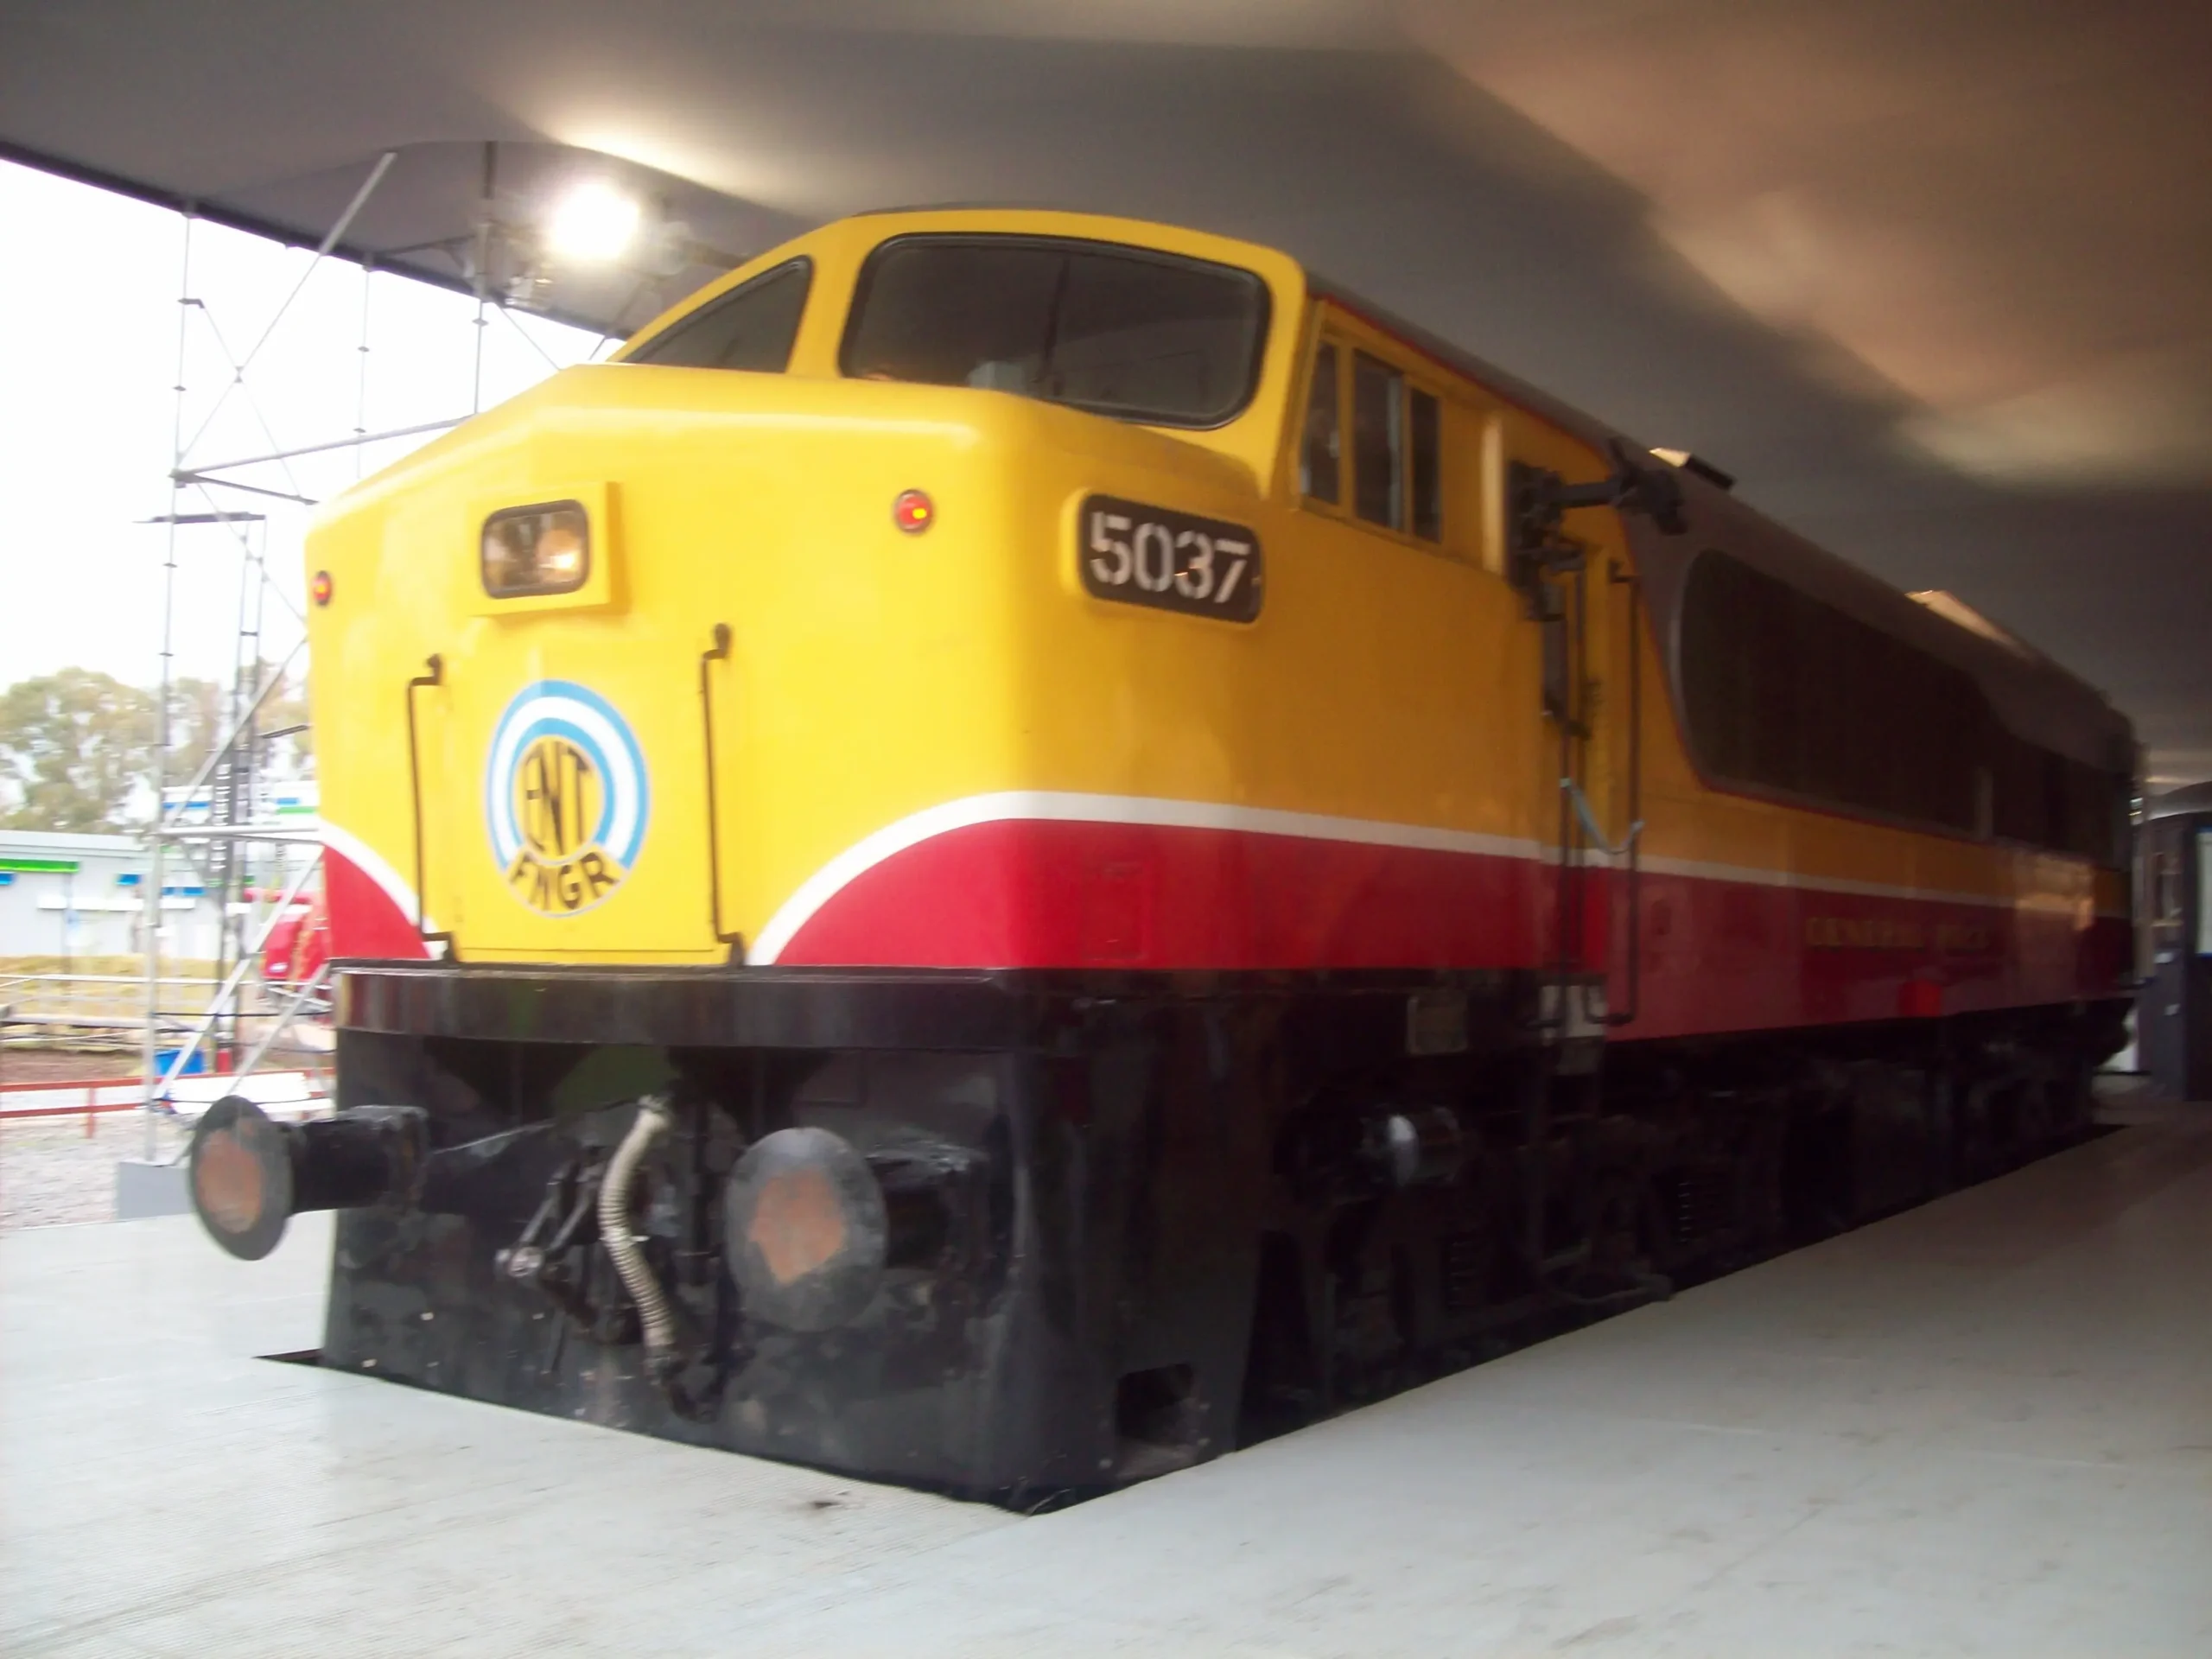 las locomotoras mas veloces de los ferrocarriles argentinos - Cuál fue la locomotora a vapor más grande de Argentina